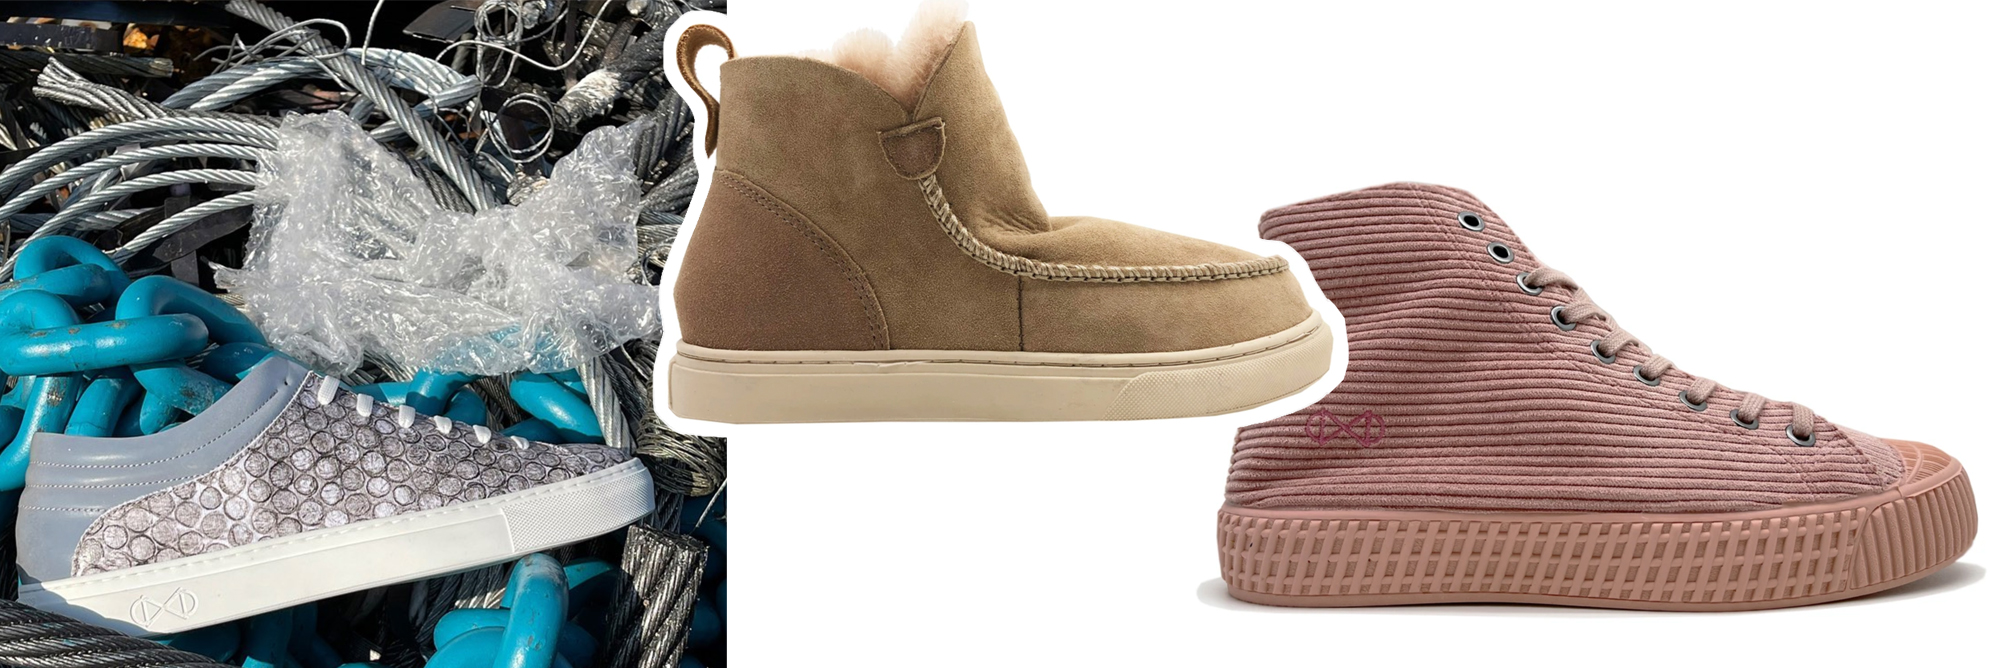 coilex ® Store – Onlineshop für innovative Schuhe